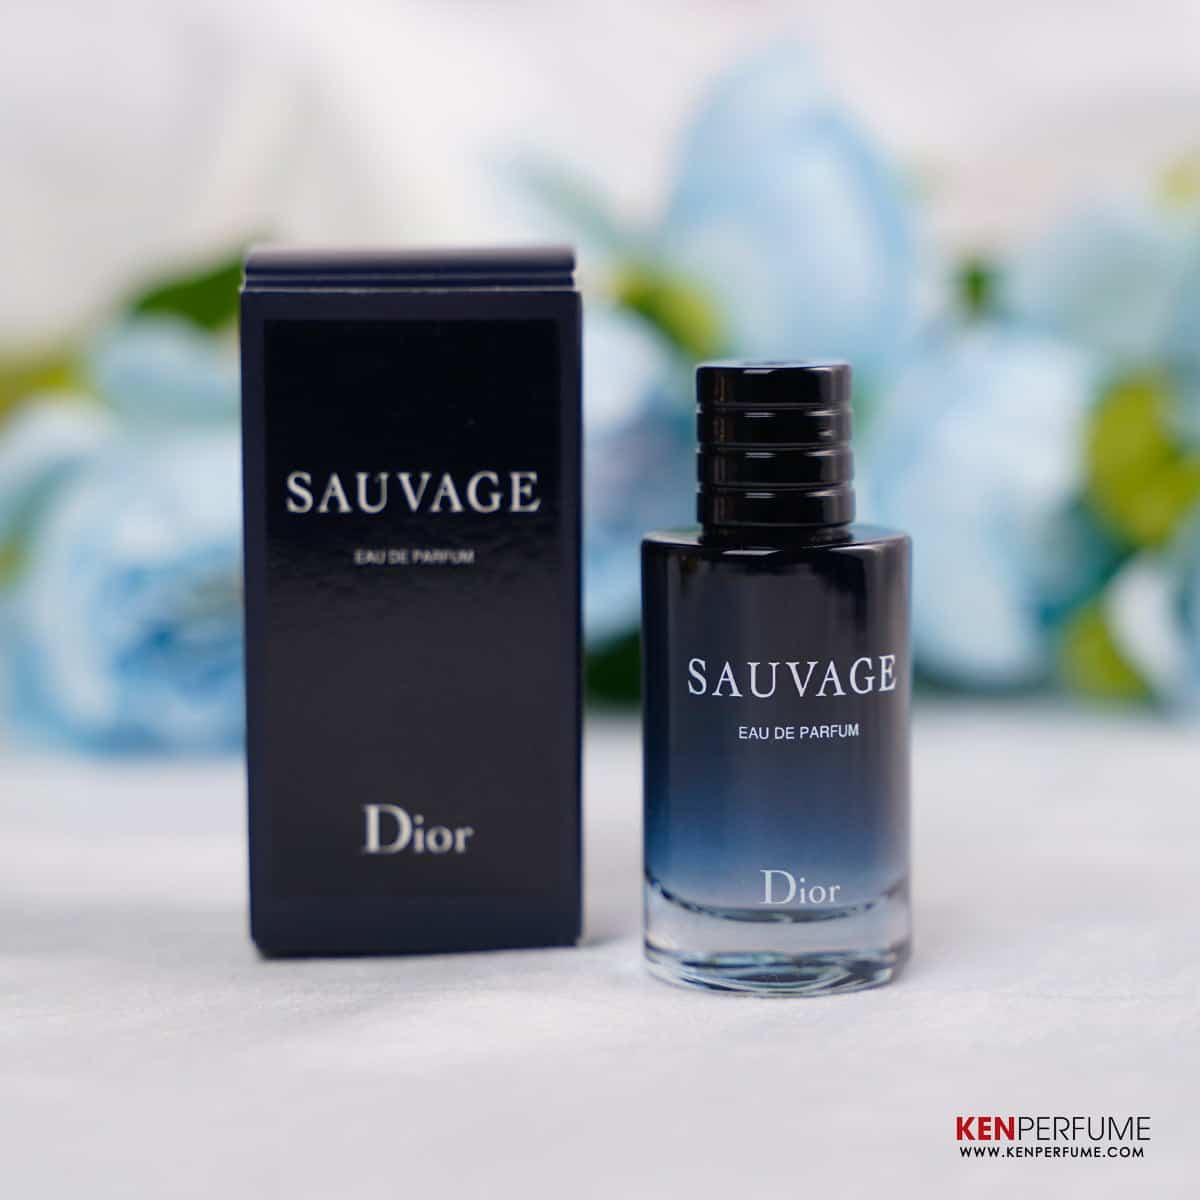 Nước hoa Dior Sauvage 60ml - Chính hãng, giá rẻ, mua, bán ở đâu